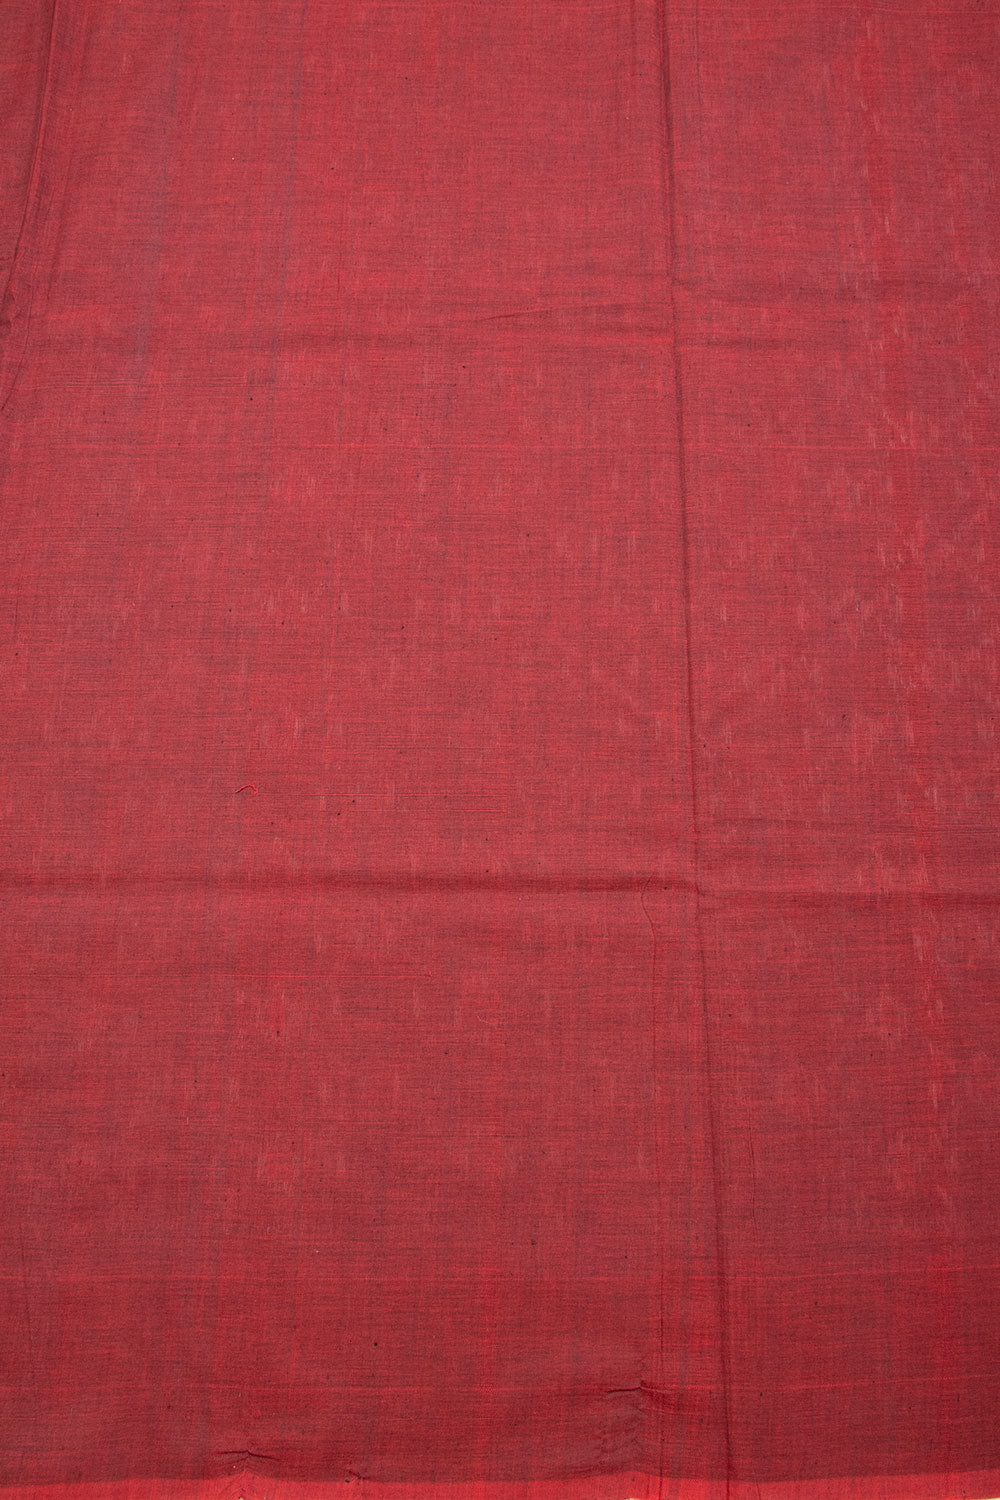 Black Handloom Pochampally Ikat Cotton Saree 10068746 - Avishya